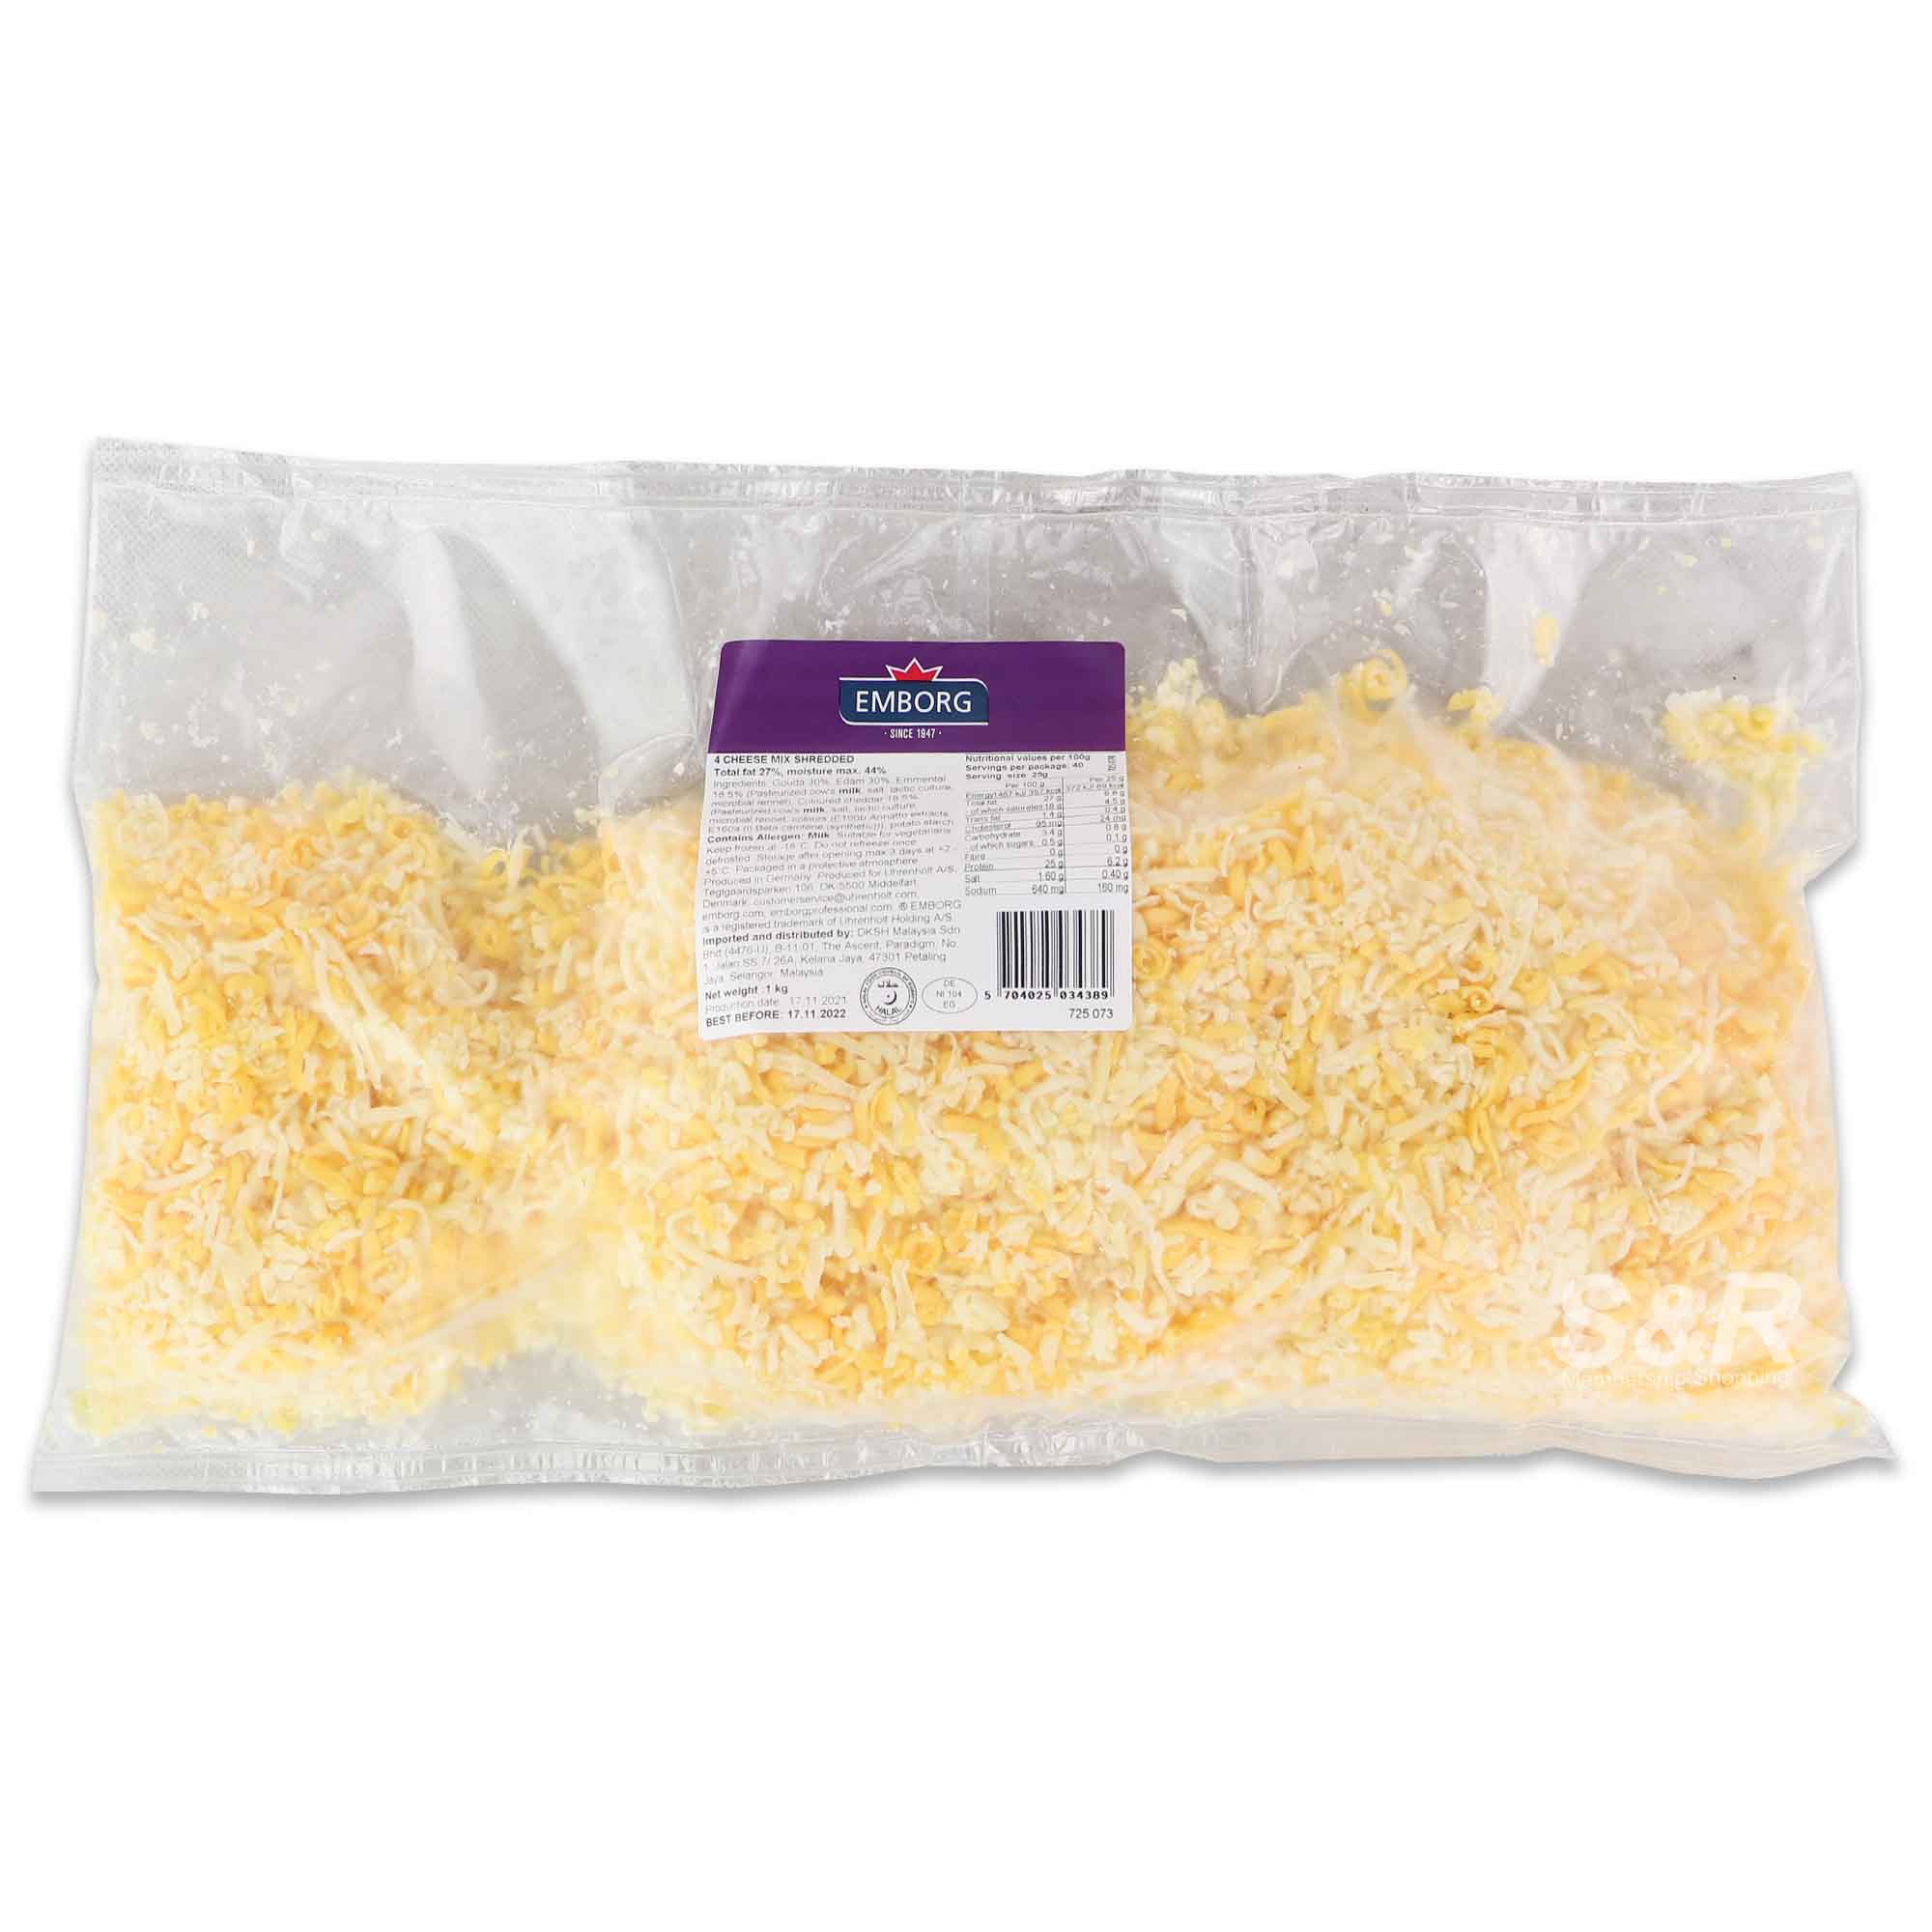 Emborg 4 Cheese Mix Shredded 1kg